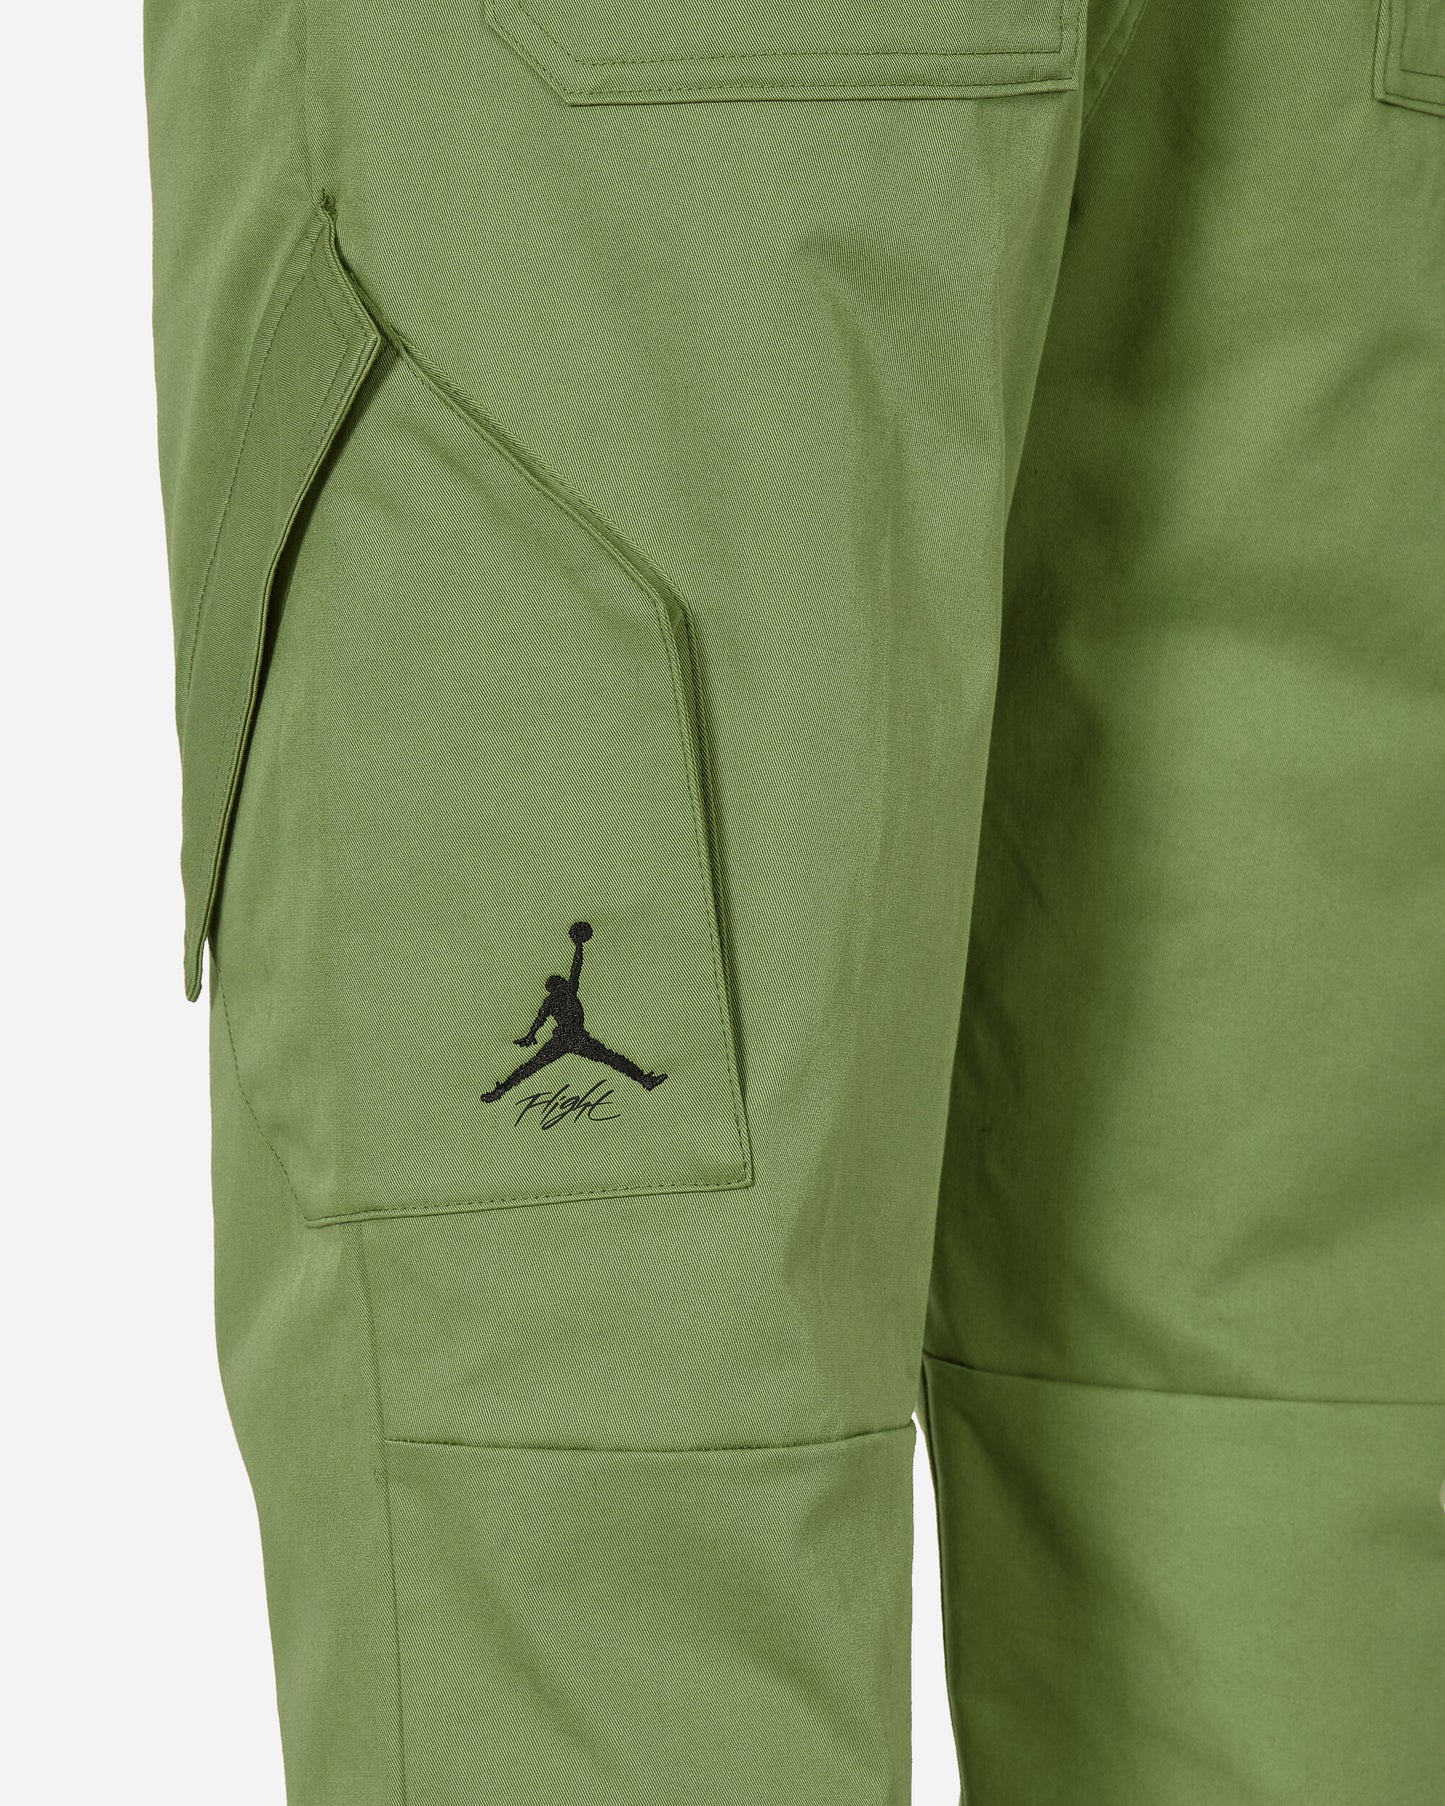 Nike Jordan M J Ess Stmt Chicago Pant Sky J Lt Olive/Black Pants Cargo FB7305-340